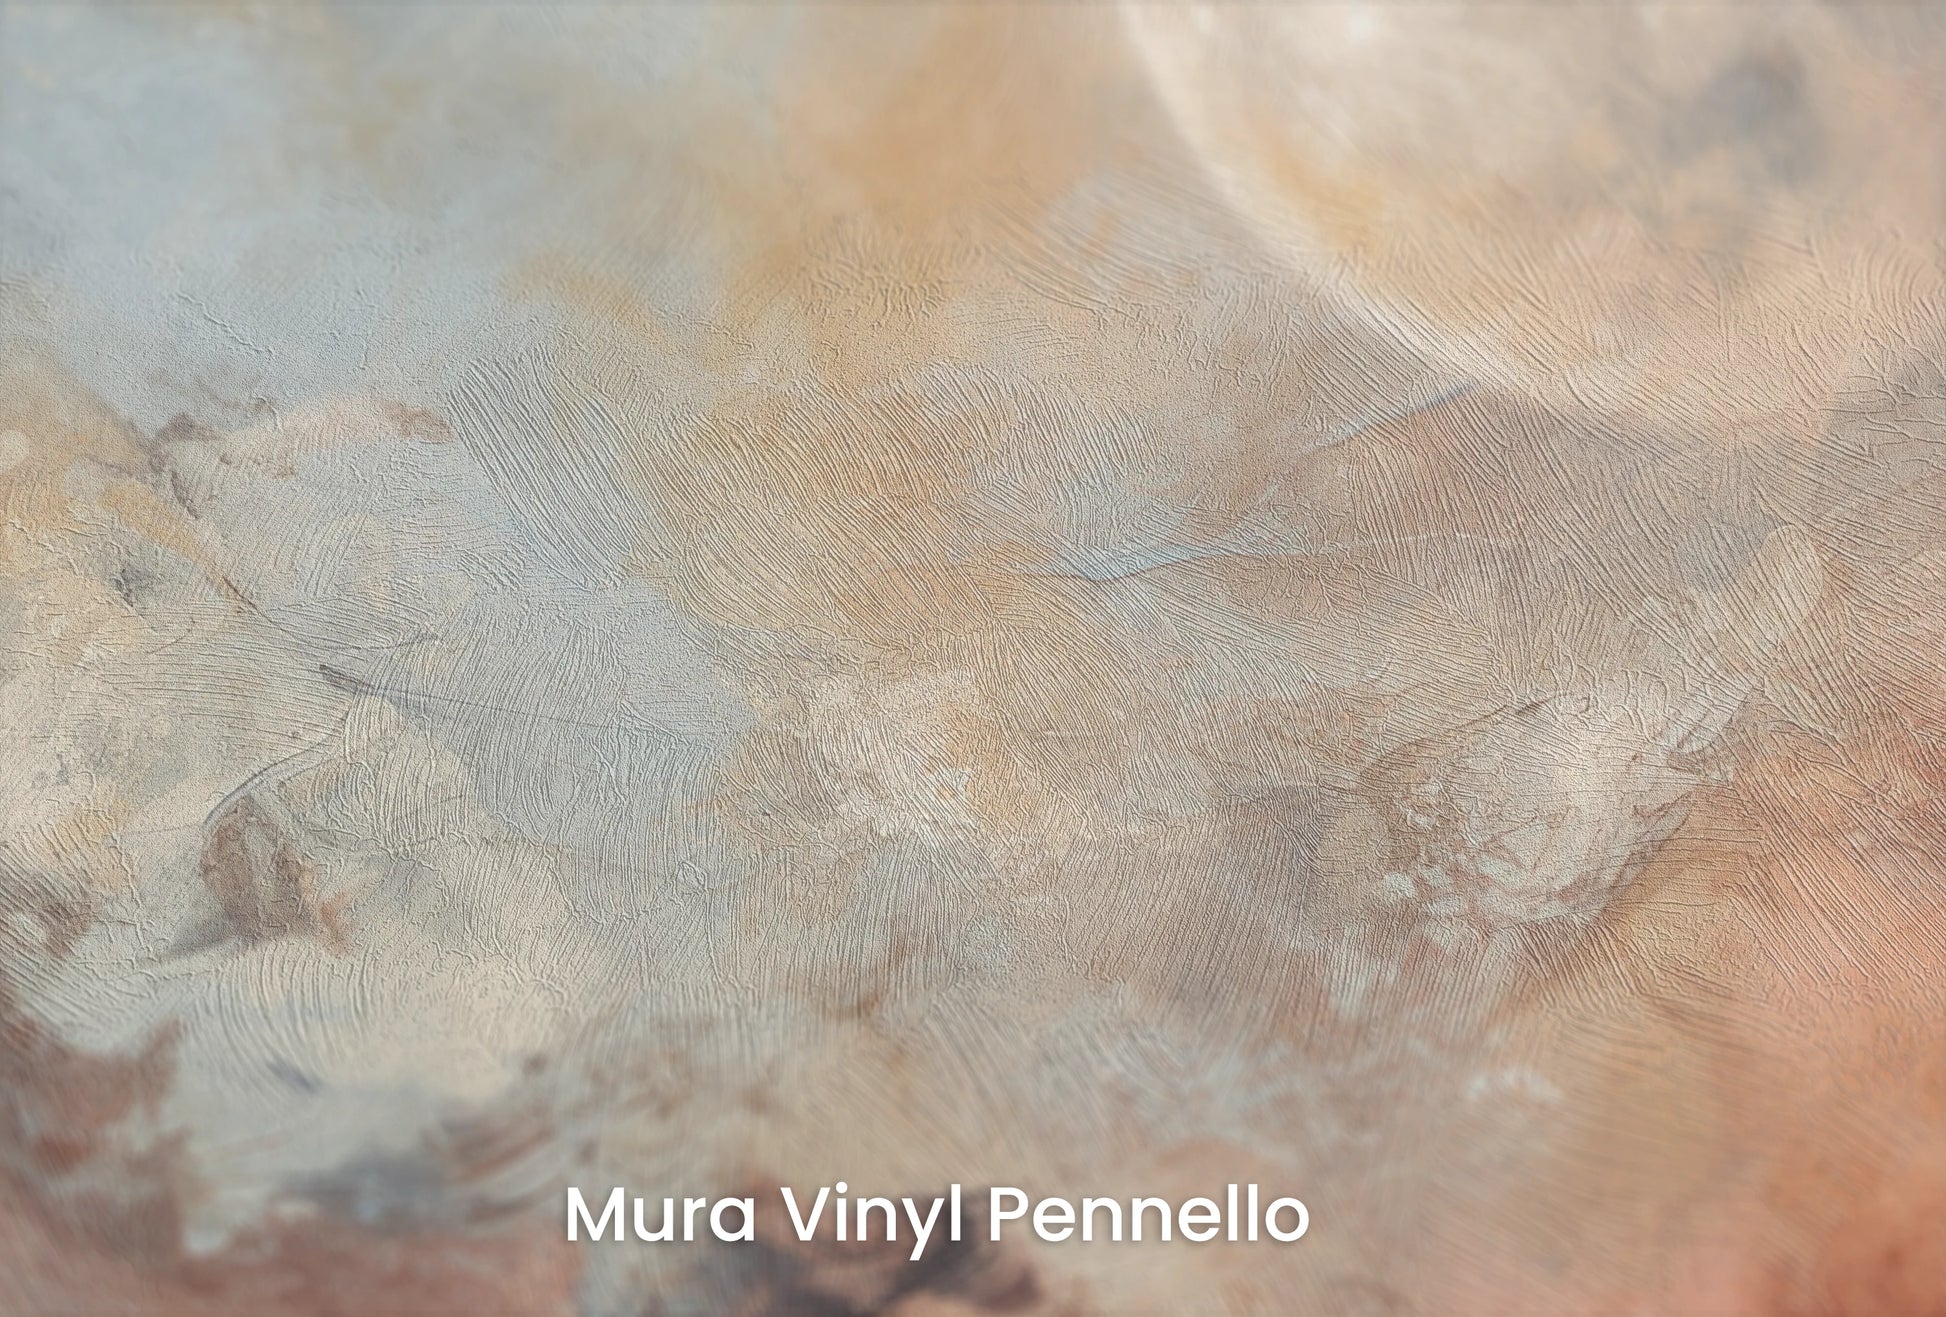 Zbliżenie na artystyczną fototapetę o nazwie Moon's Monochrome na podłożu Mura Vinyl Pennello - faktura pociągnięć pędzla malarskiego.